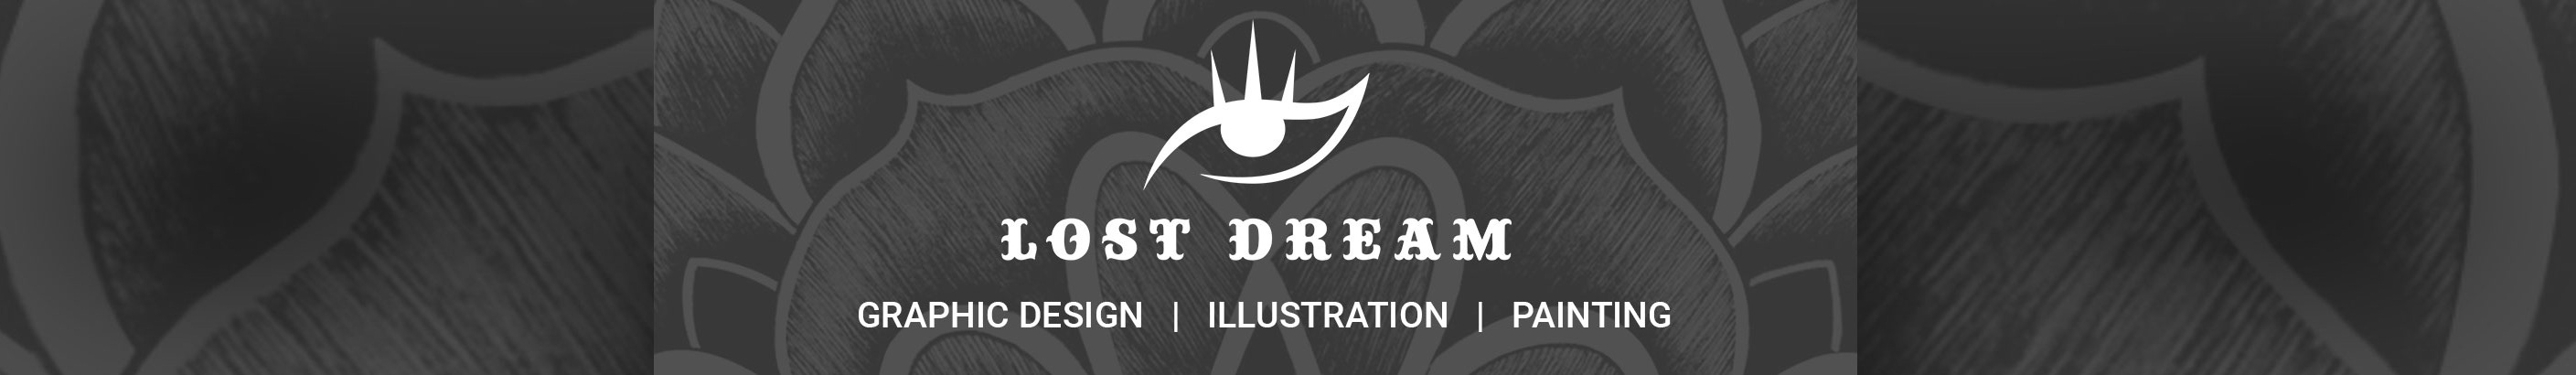 Lost Dream's profile banner